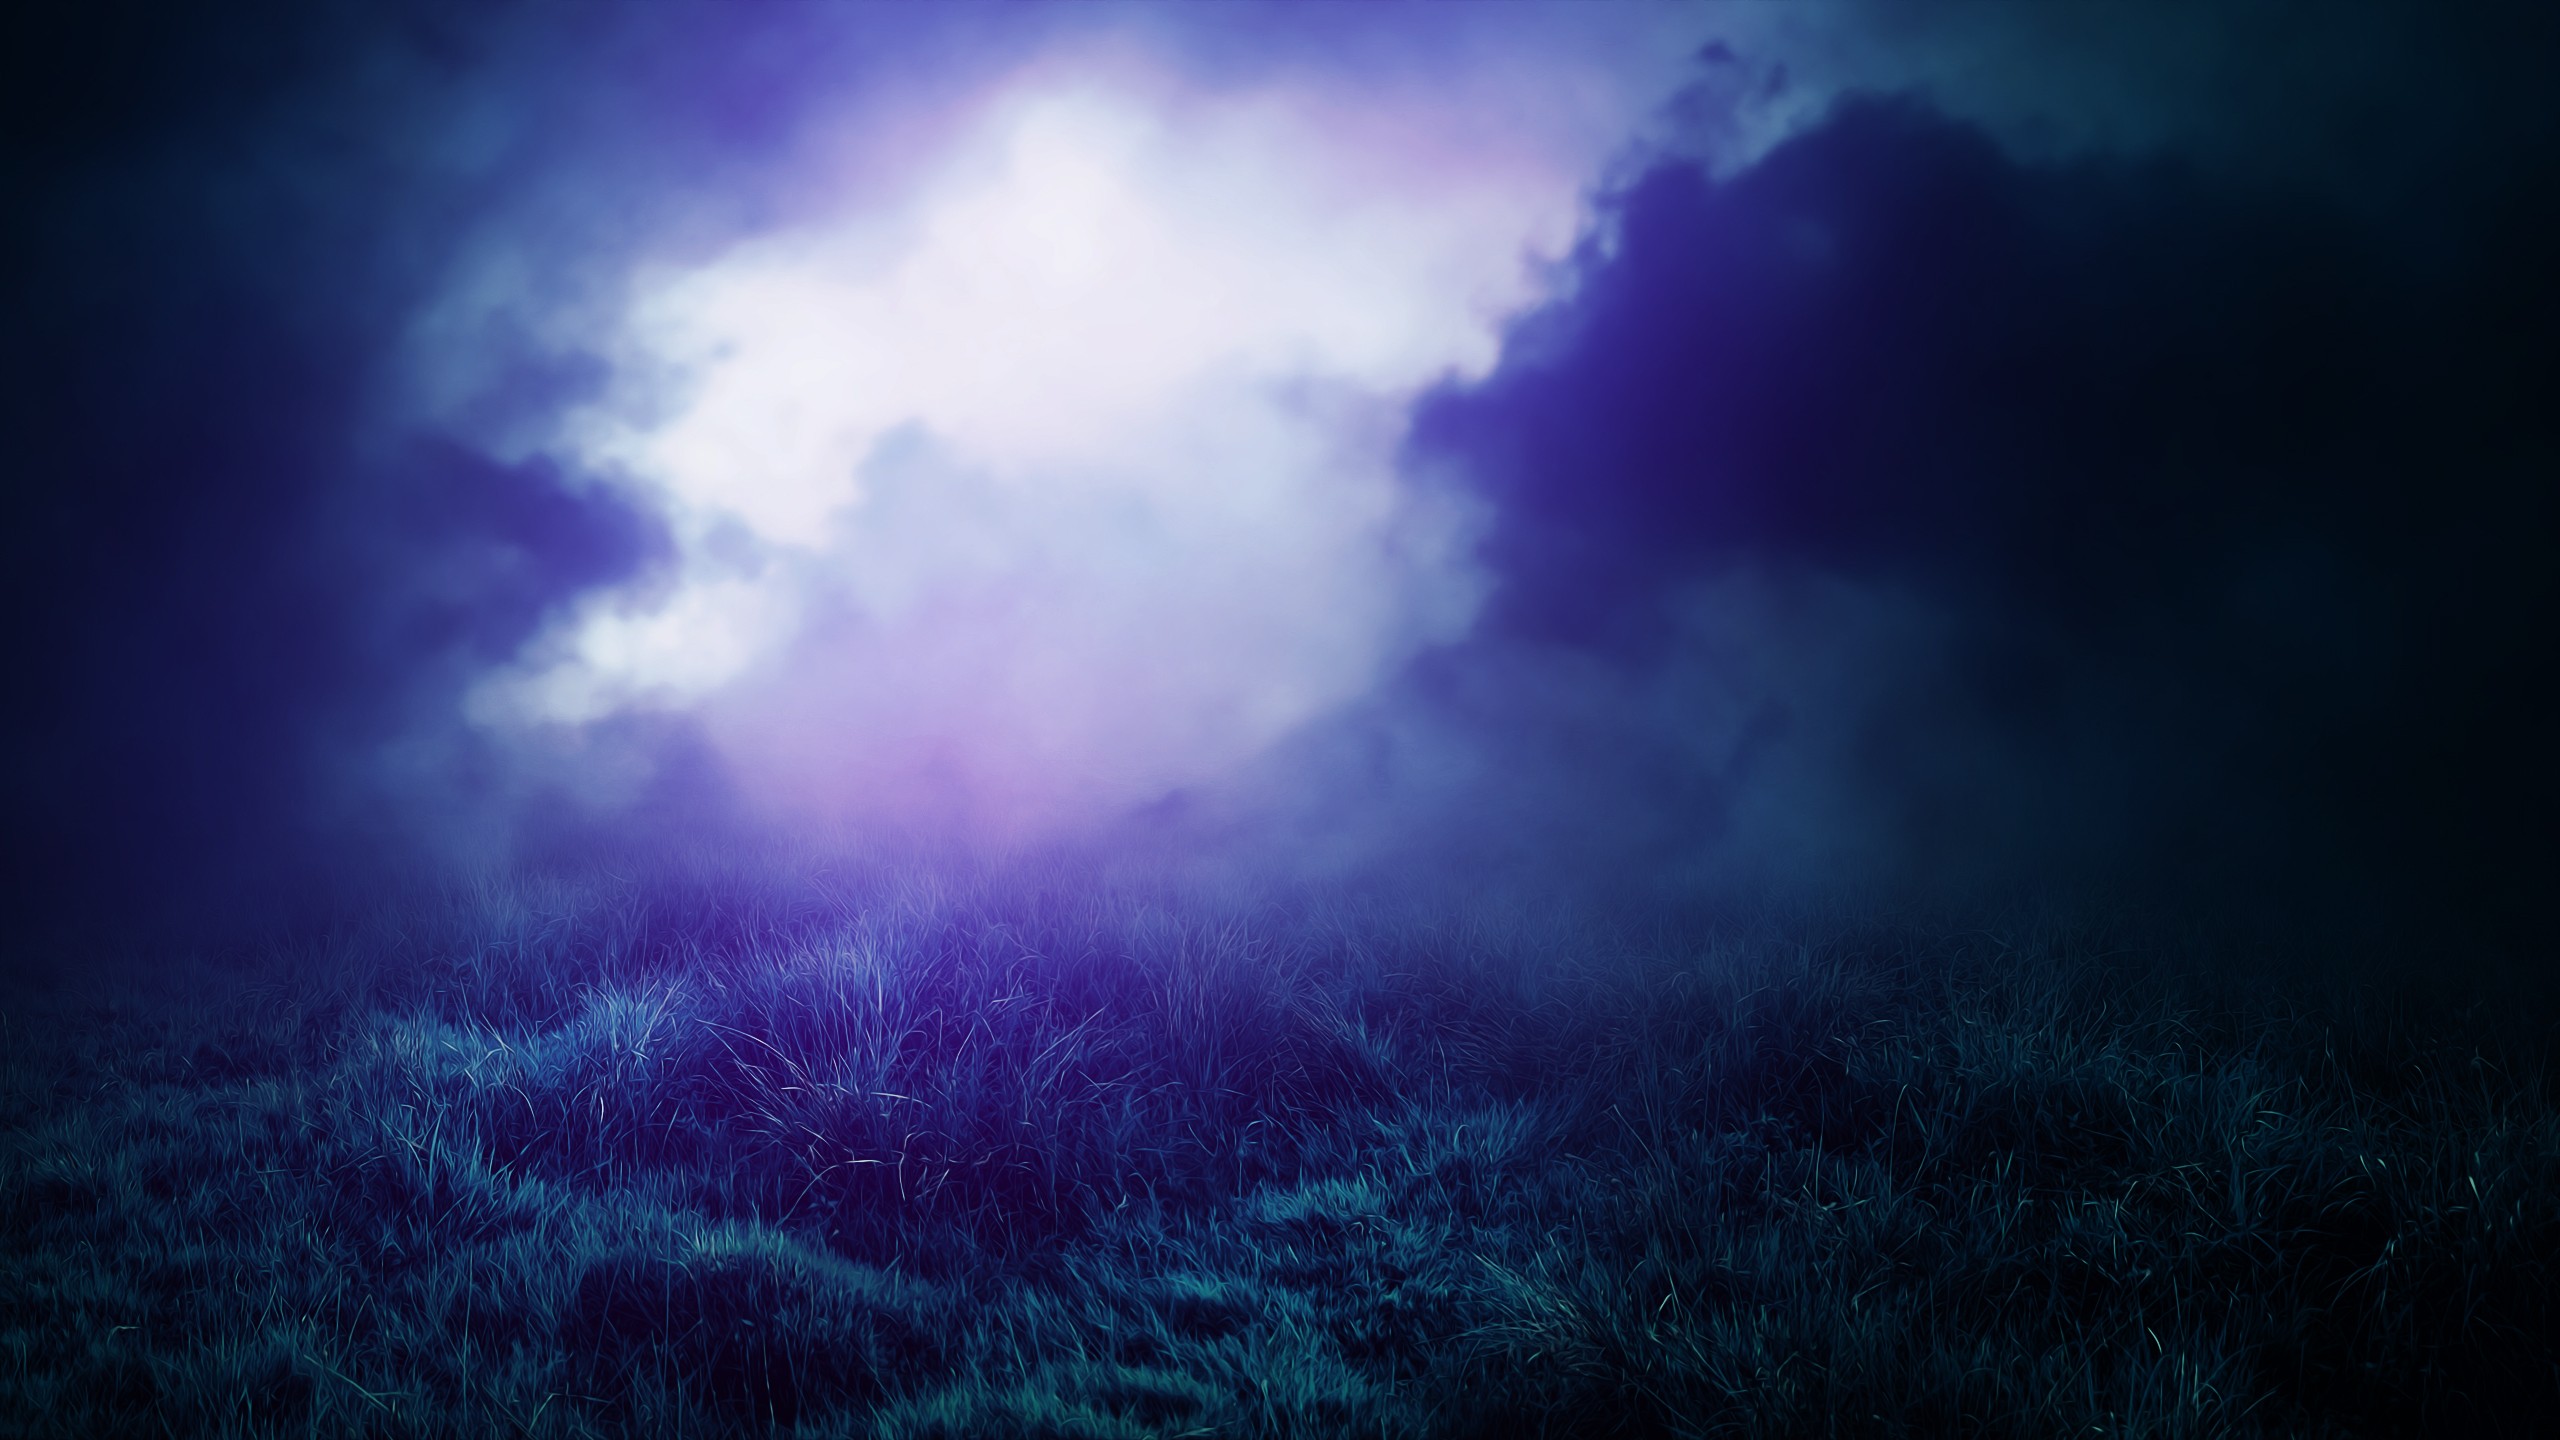 Музыка для видео спокойная на задний фон. Фон туман. Фиолетовый туман. Разноцветный туман. Синий лес.